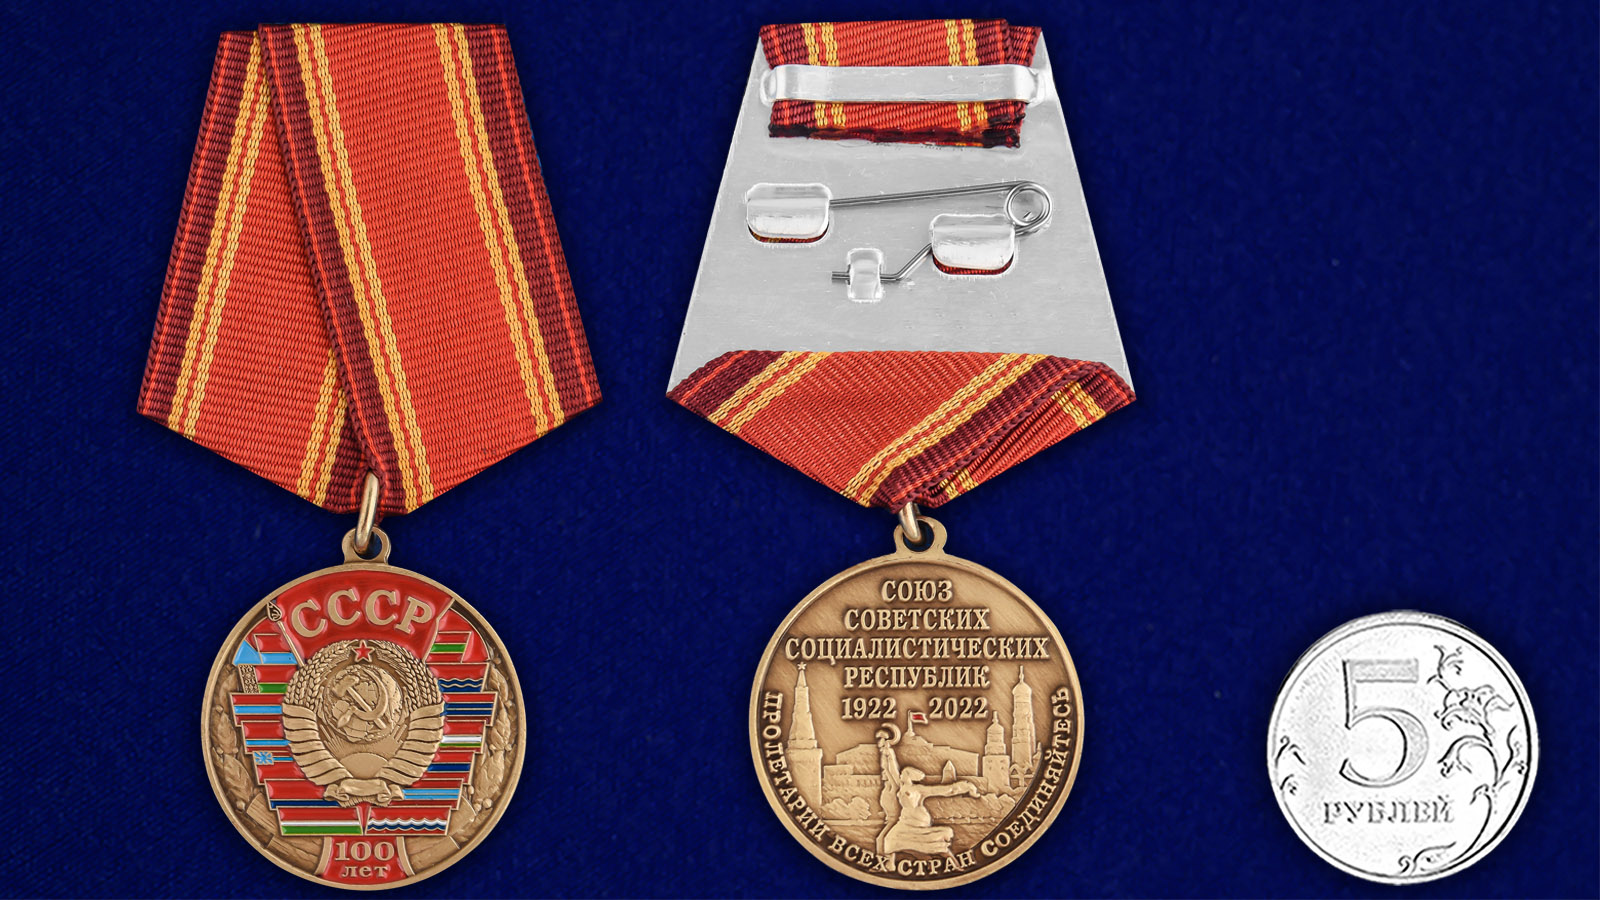 Купить медаль 100 лет Союзу Советских Социалистических республик выгодно